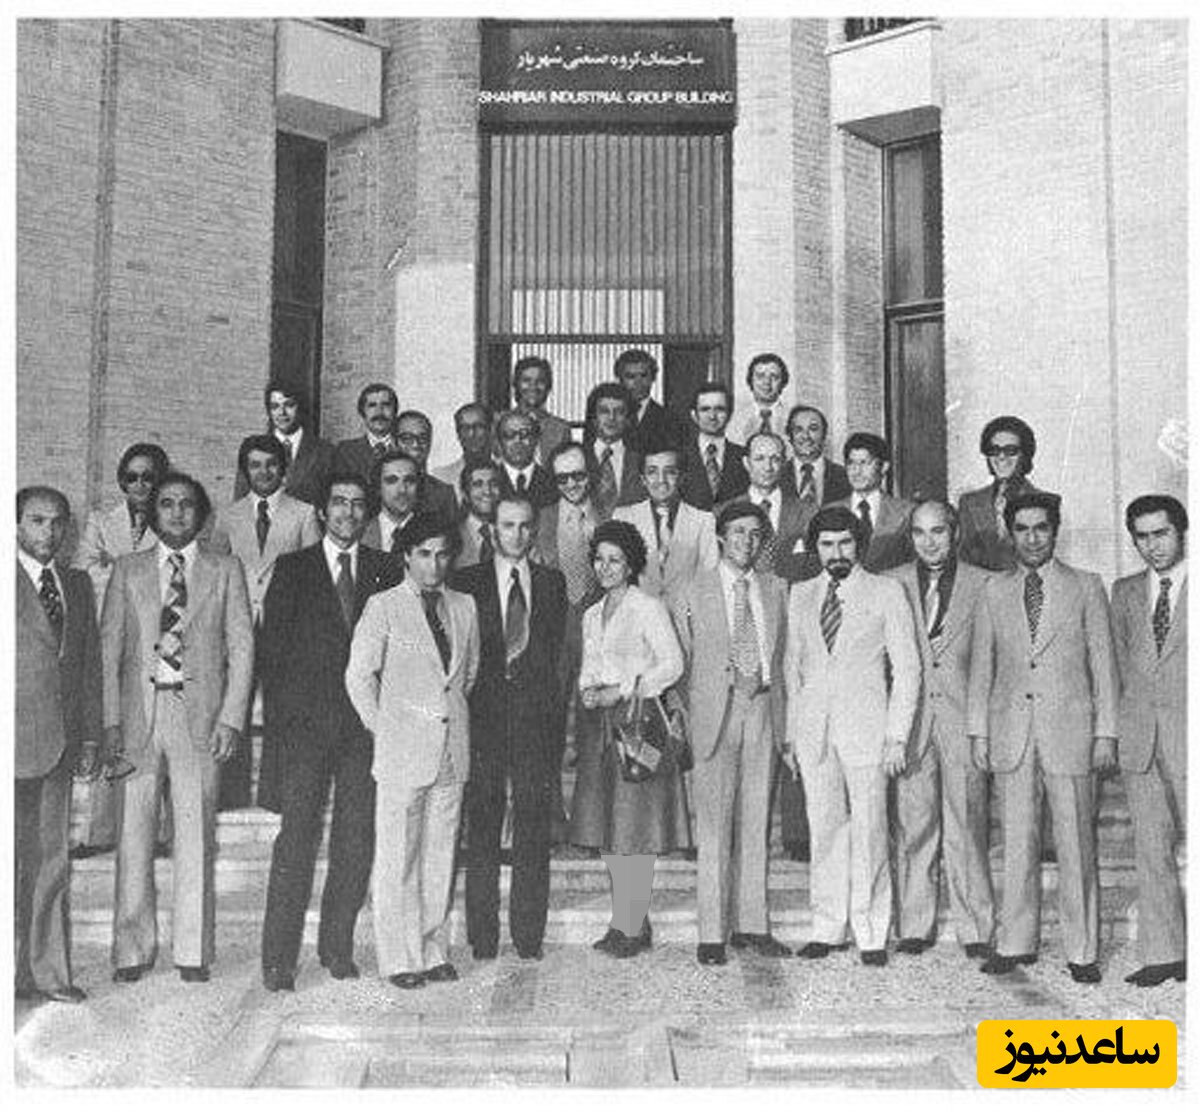 عکس اساتید شعبه دانشگاه هاروارد در تهران که بعد از انقلاب تبدیل به دانشگاه امام صادق شد